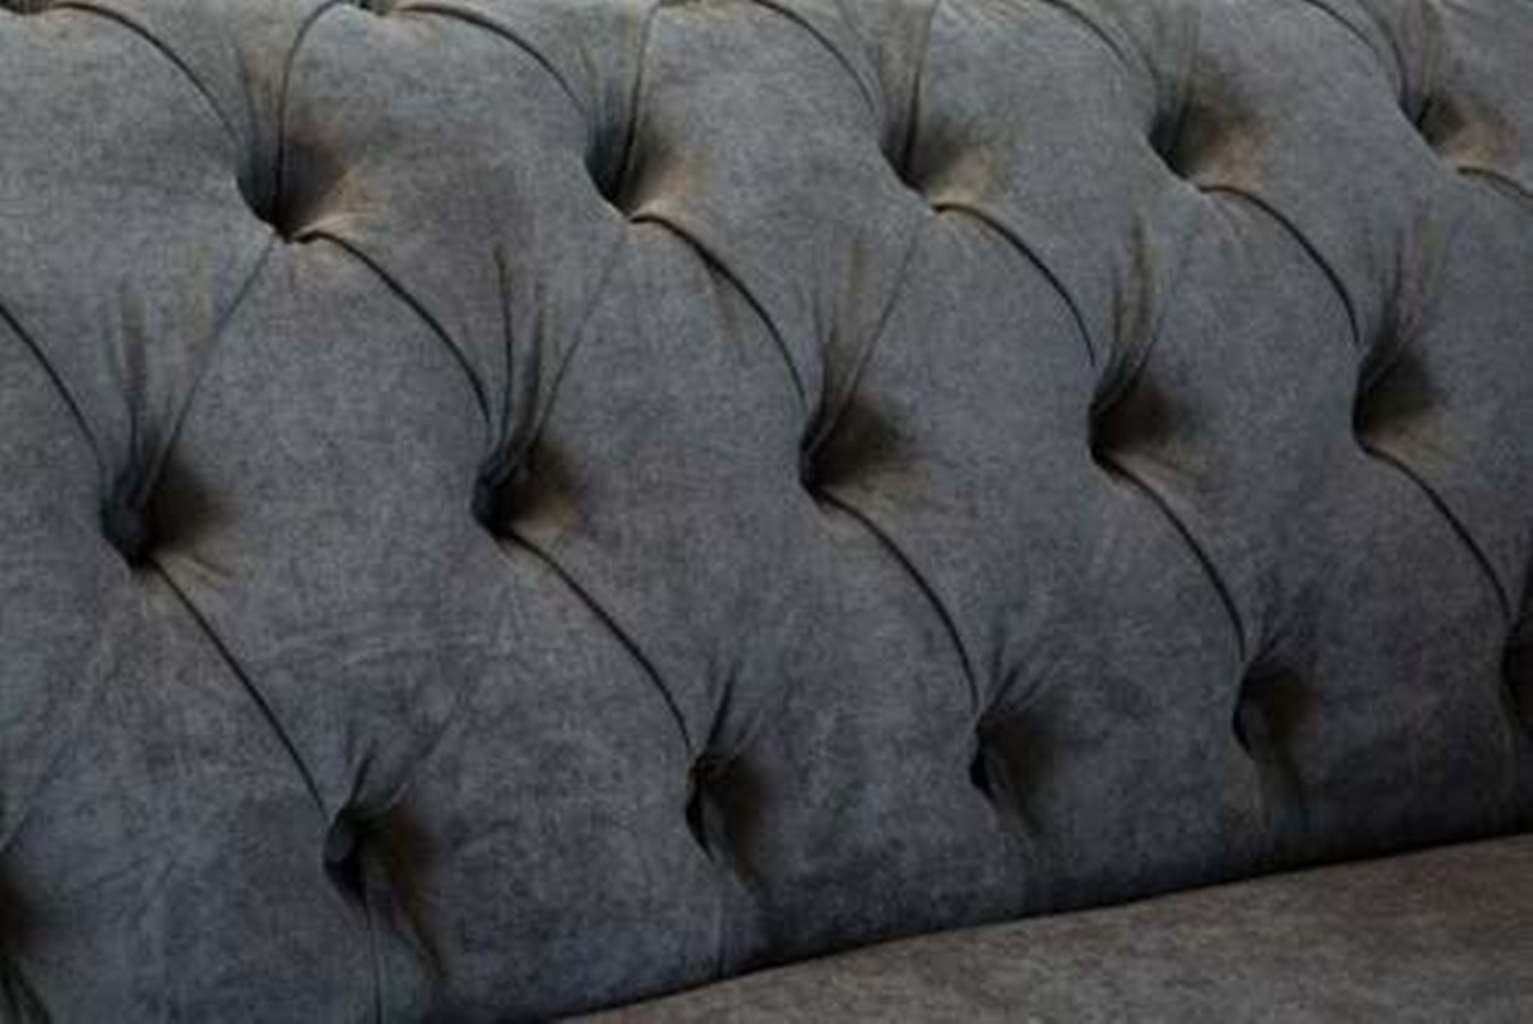 Sitzer Chesterfield-Sofa, JVmoebel Couchen Samt 2 Couch Designer Stoff Cheserfield Sofa